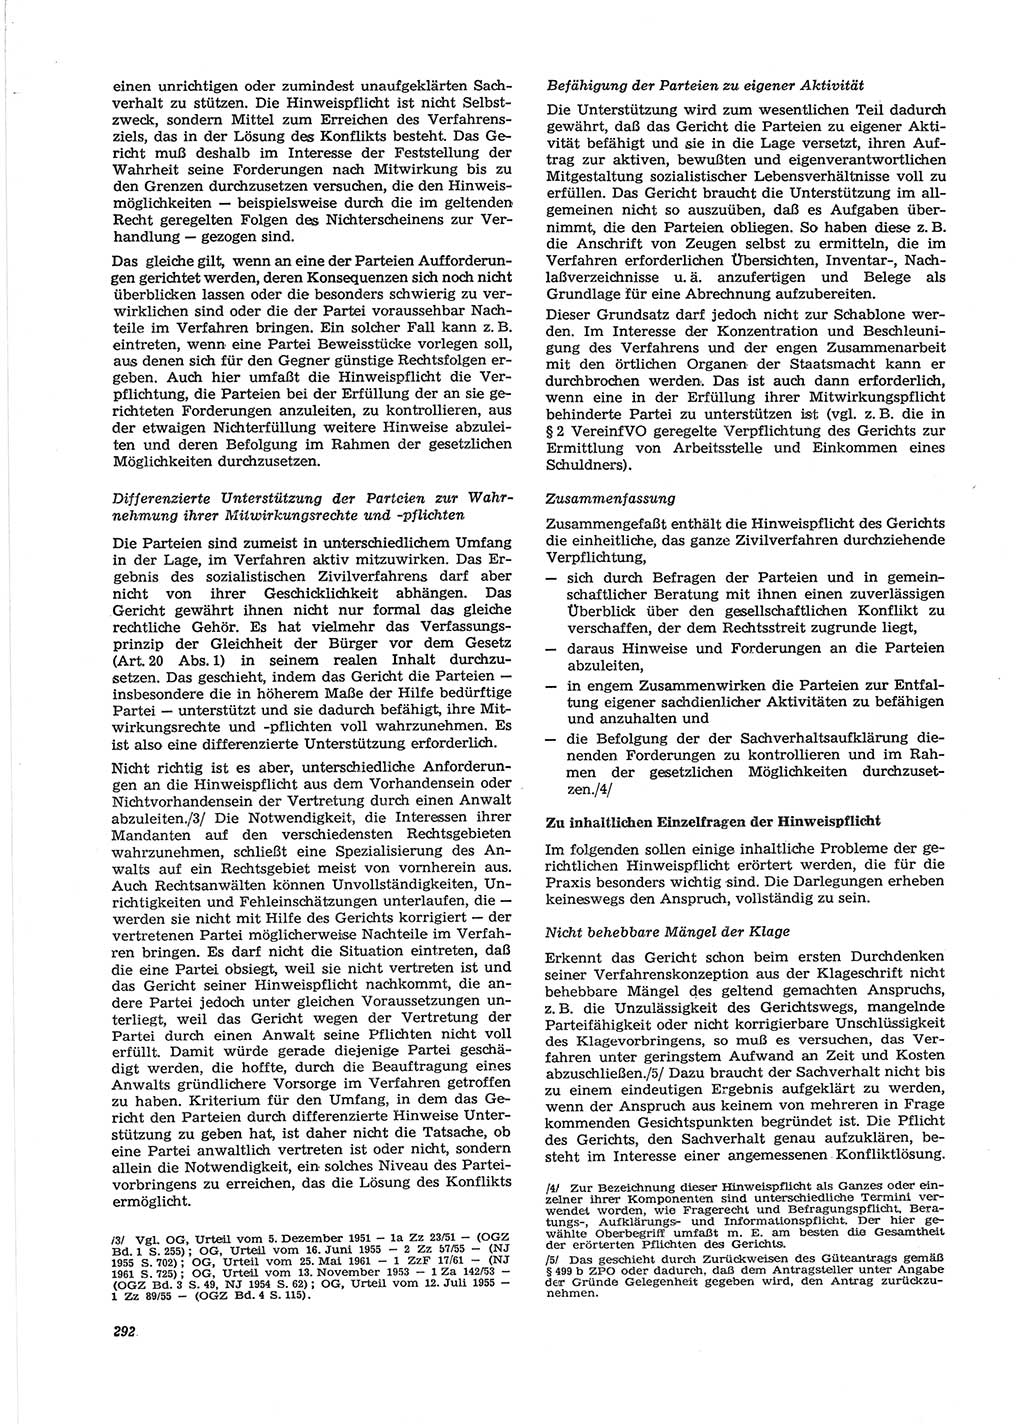 Neue Justiz (NJ), Zeitschrift für Recht und Rechtswissenschaft [Deutsche Demokratische Republik (DDR)], 28. Jahrgang 1974, Seite 292 (NJ DDR 1974, S. 292)